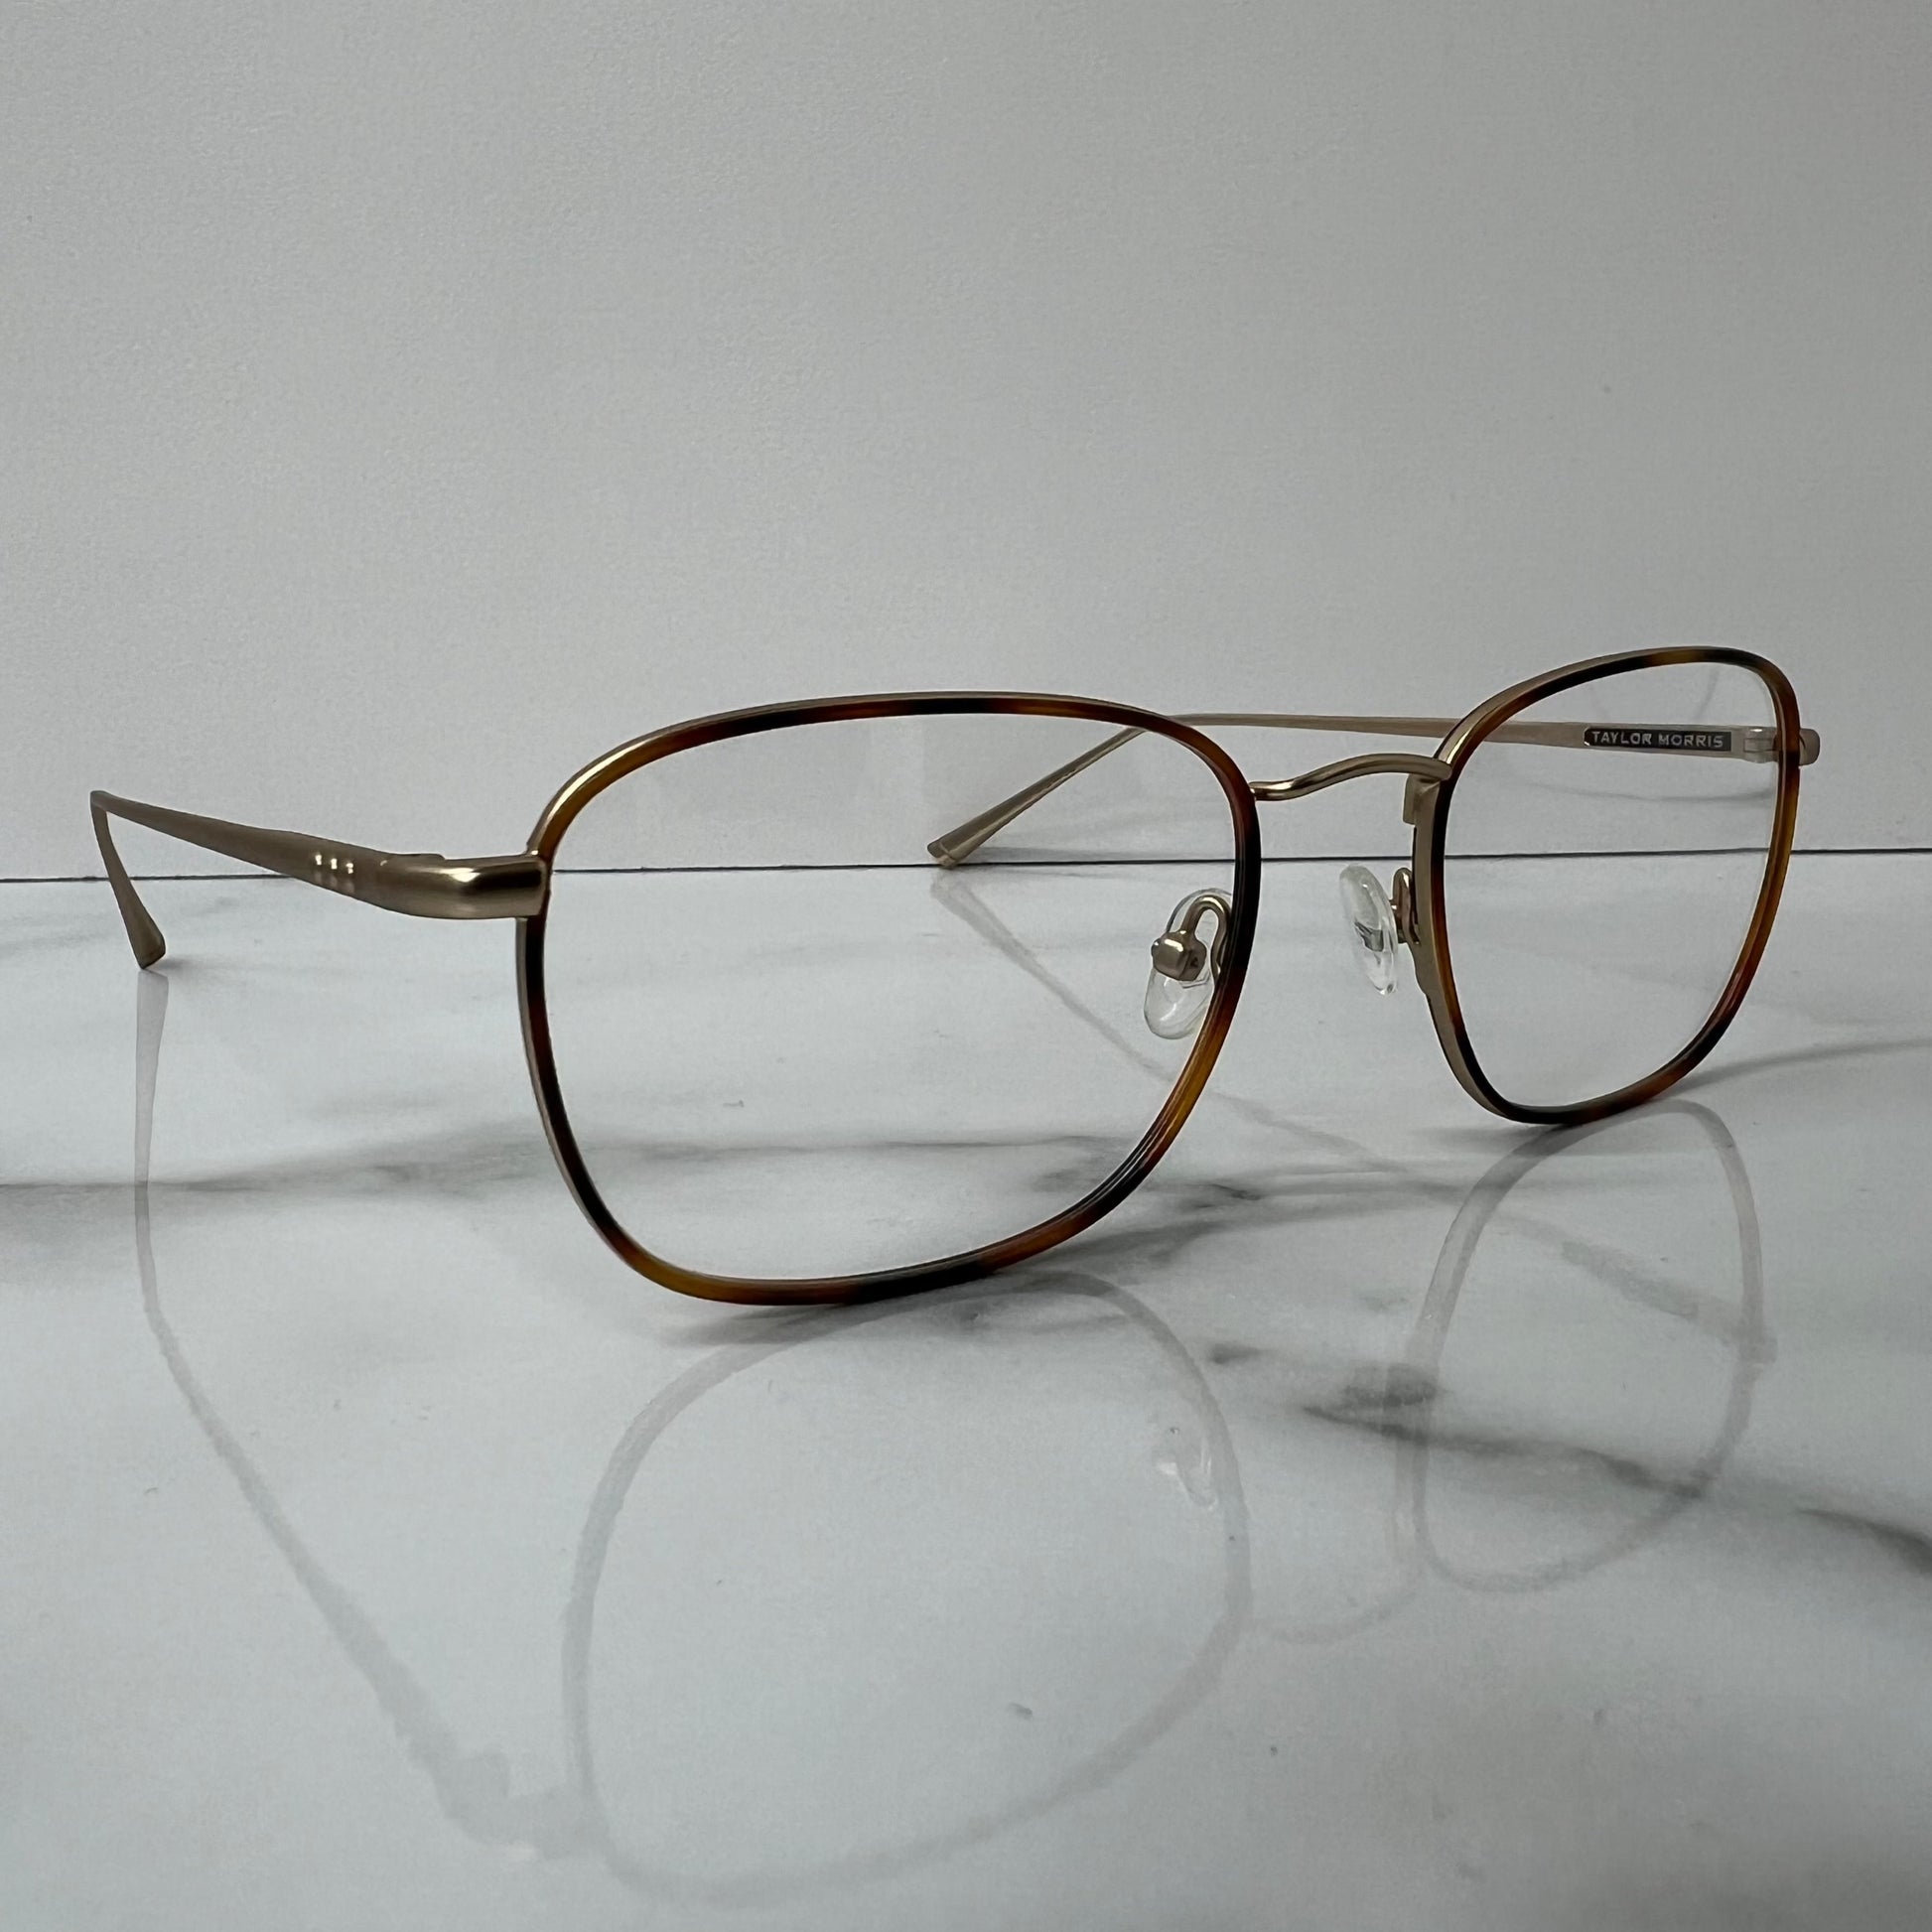 Taylor Morris SW8 C4 Prescription Optical Glasses